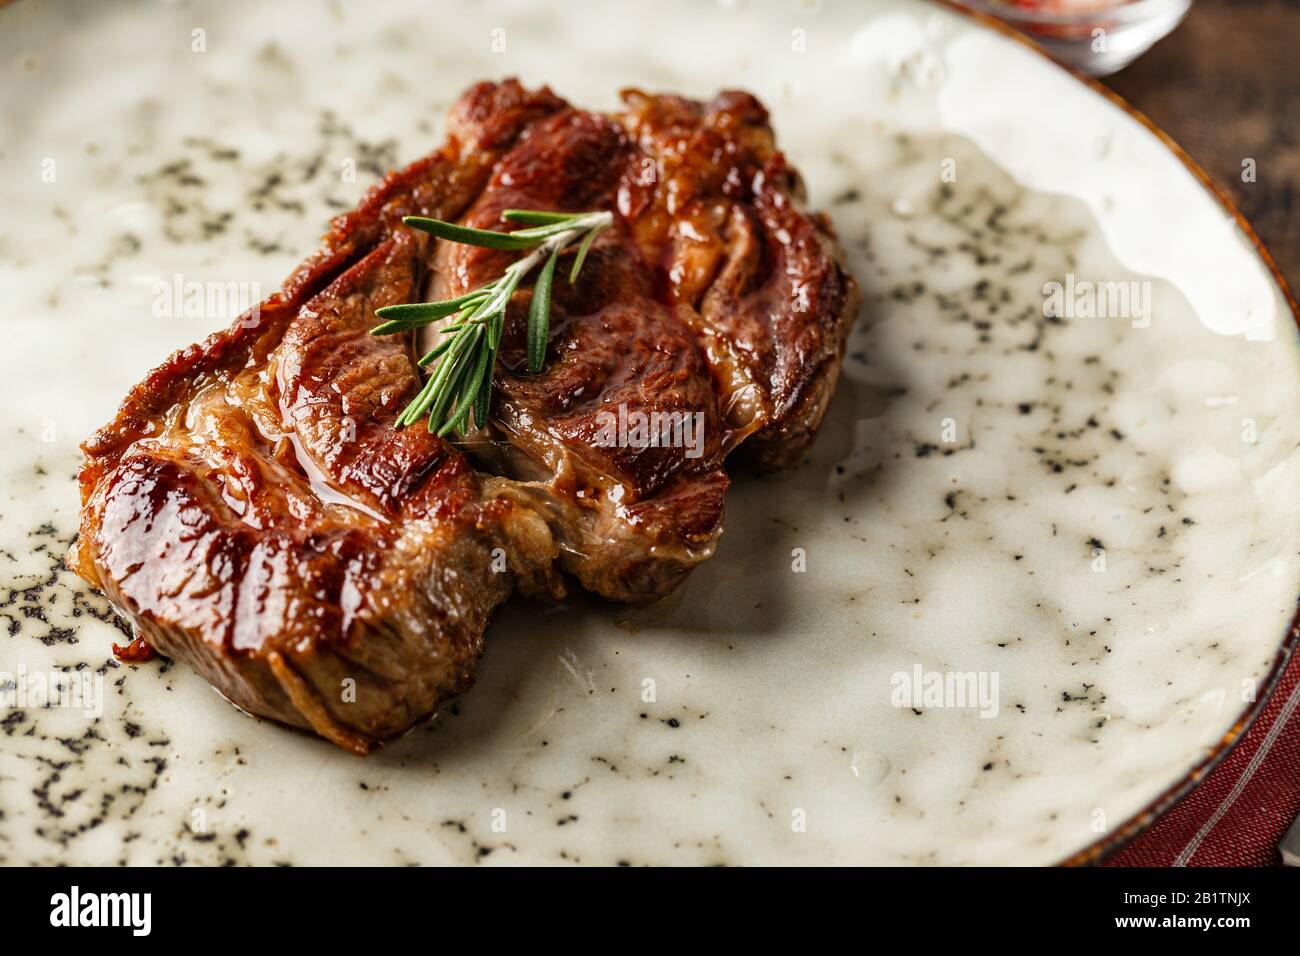 Bifteck de bœuf grillé, bifteck de la Chuck Black Angus sur un plat sur une table en bois Banque D'Images